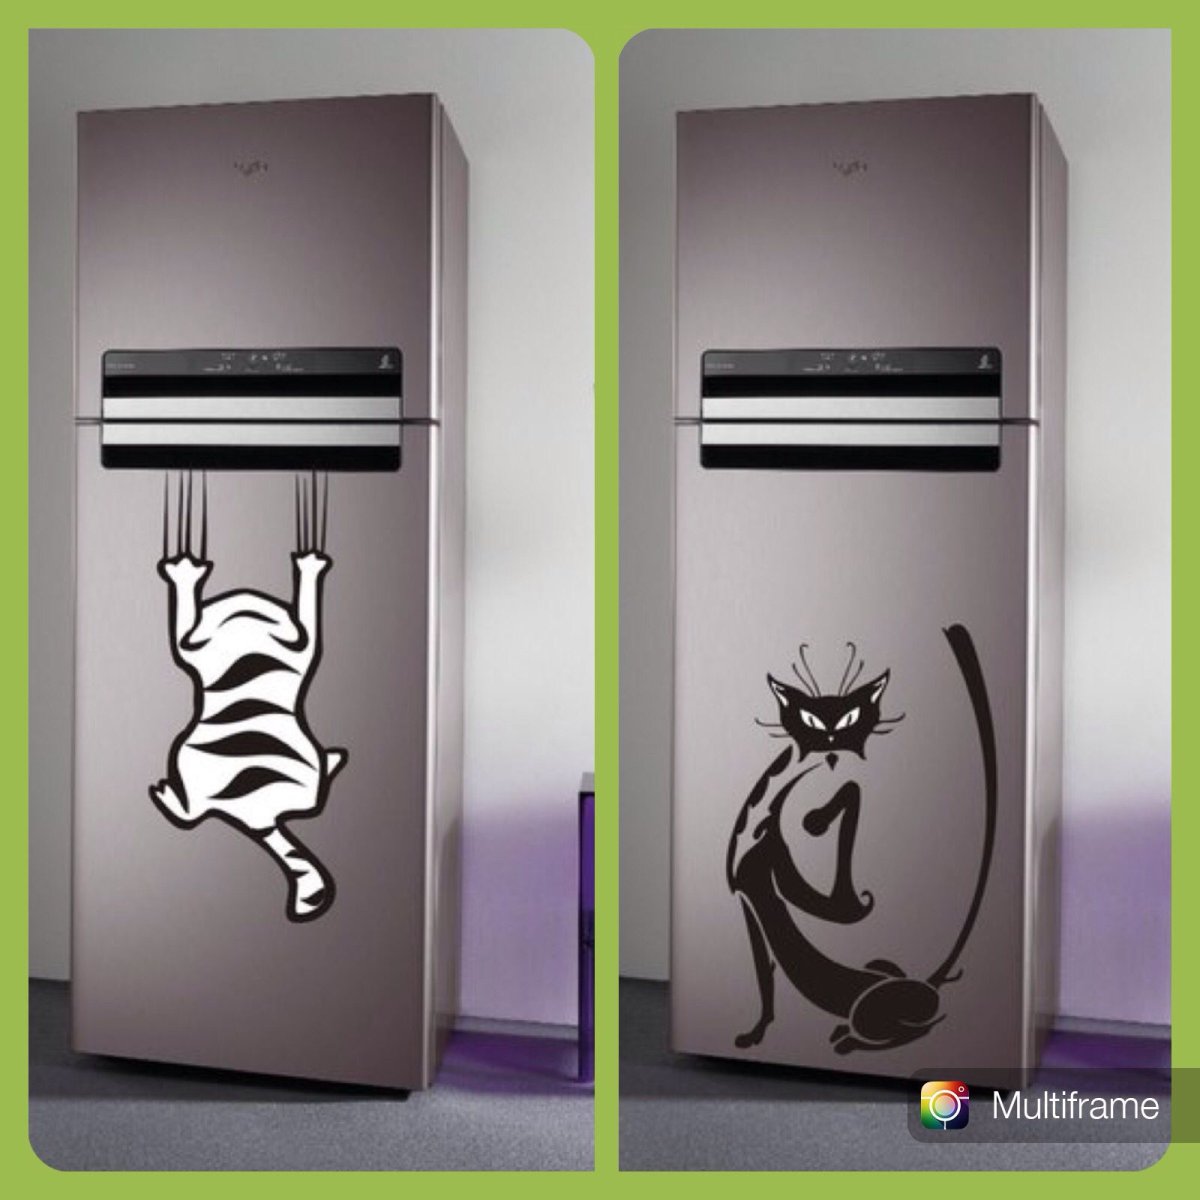 Дизайнерские наклейки на холодильник